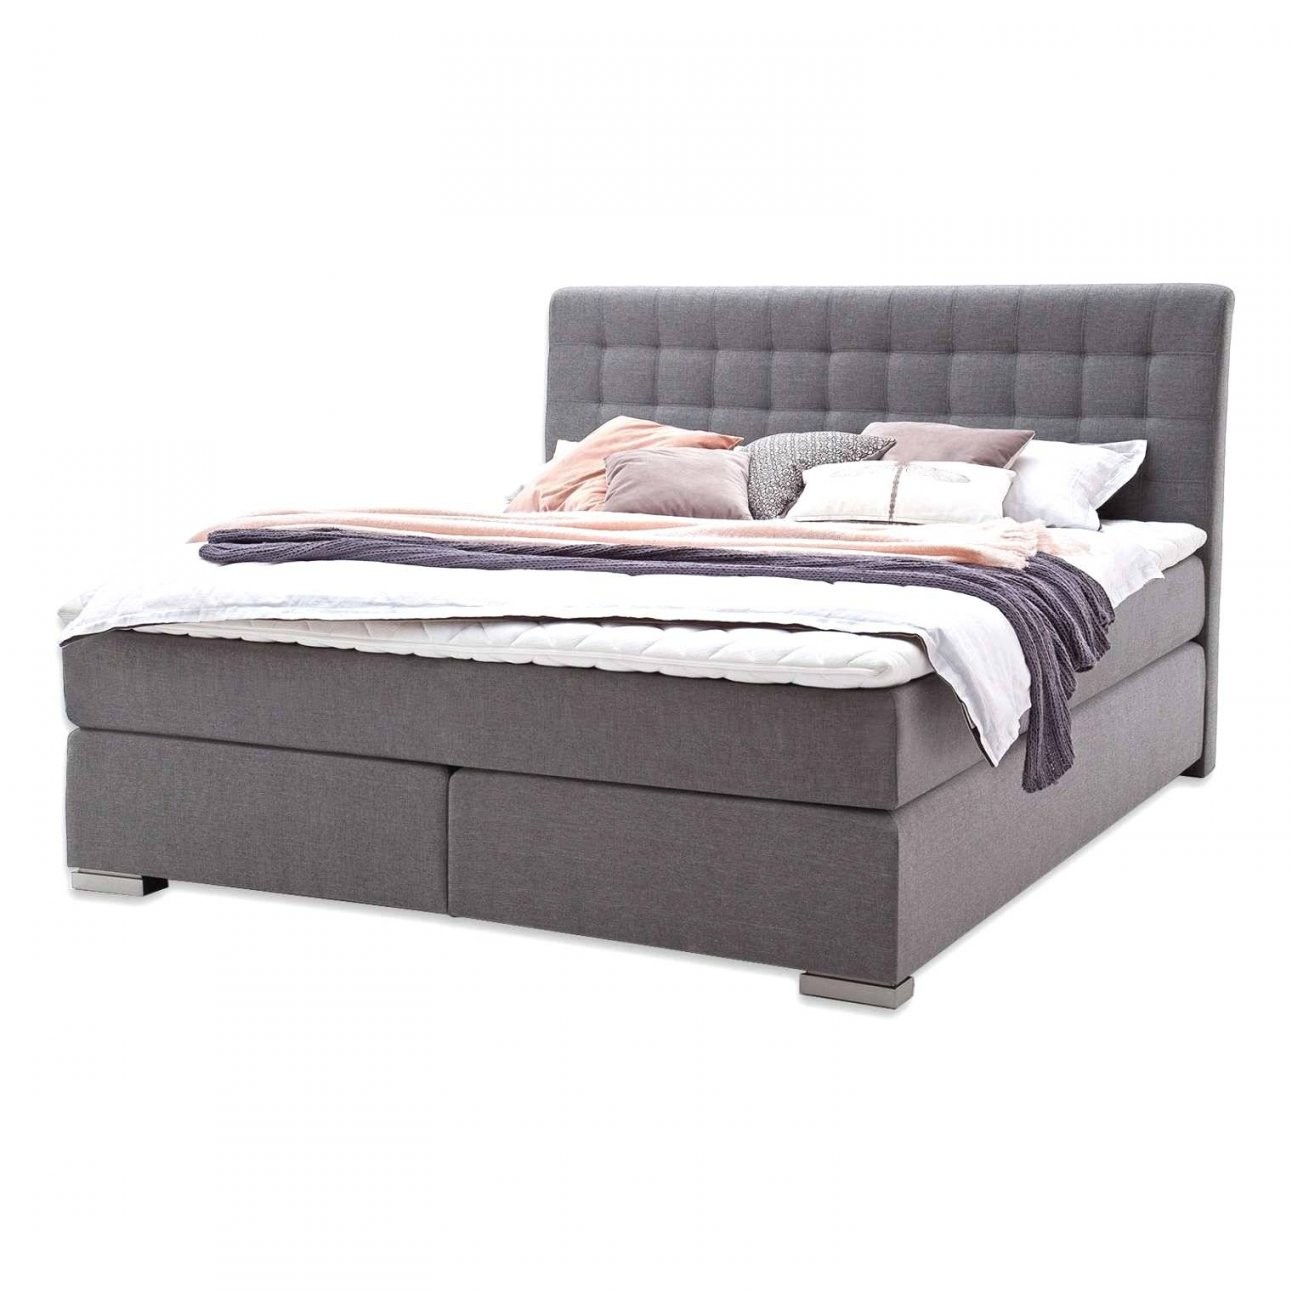 Ostermann Betten Elegant Tolle 32 Gebrauchte Betten 140×200 Design von Gebrauchte Betten 140X200 Bild